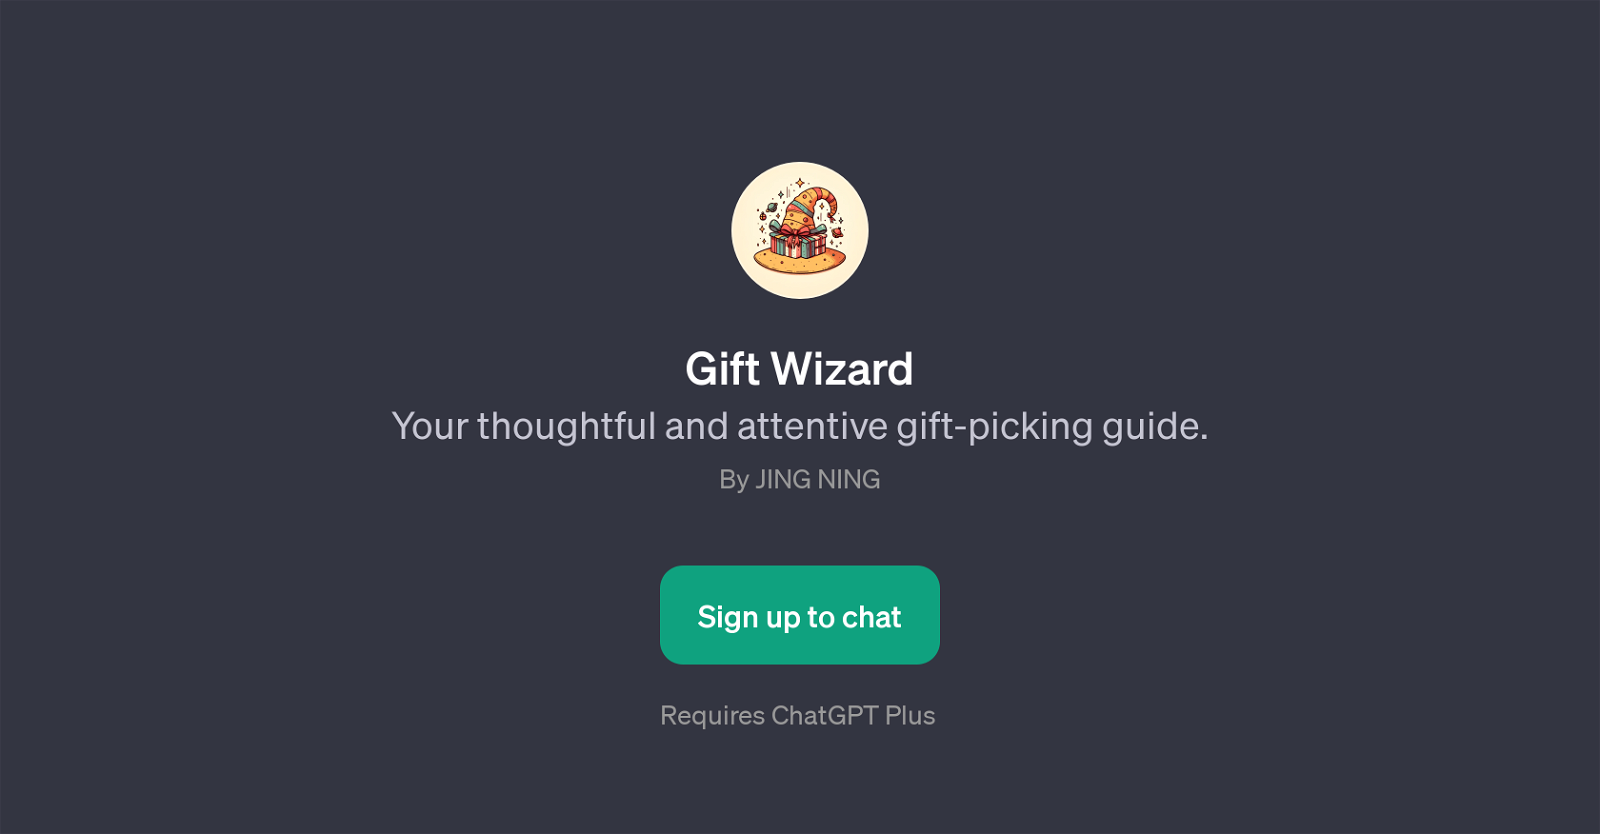 Gift Wizard website